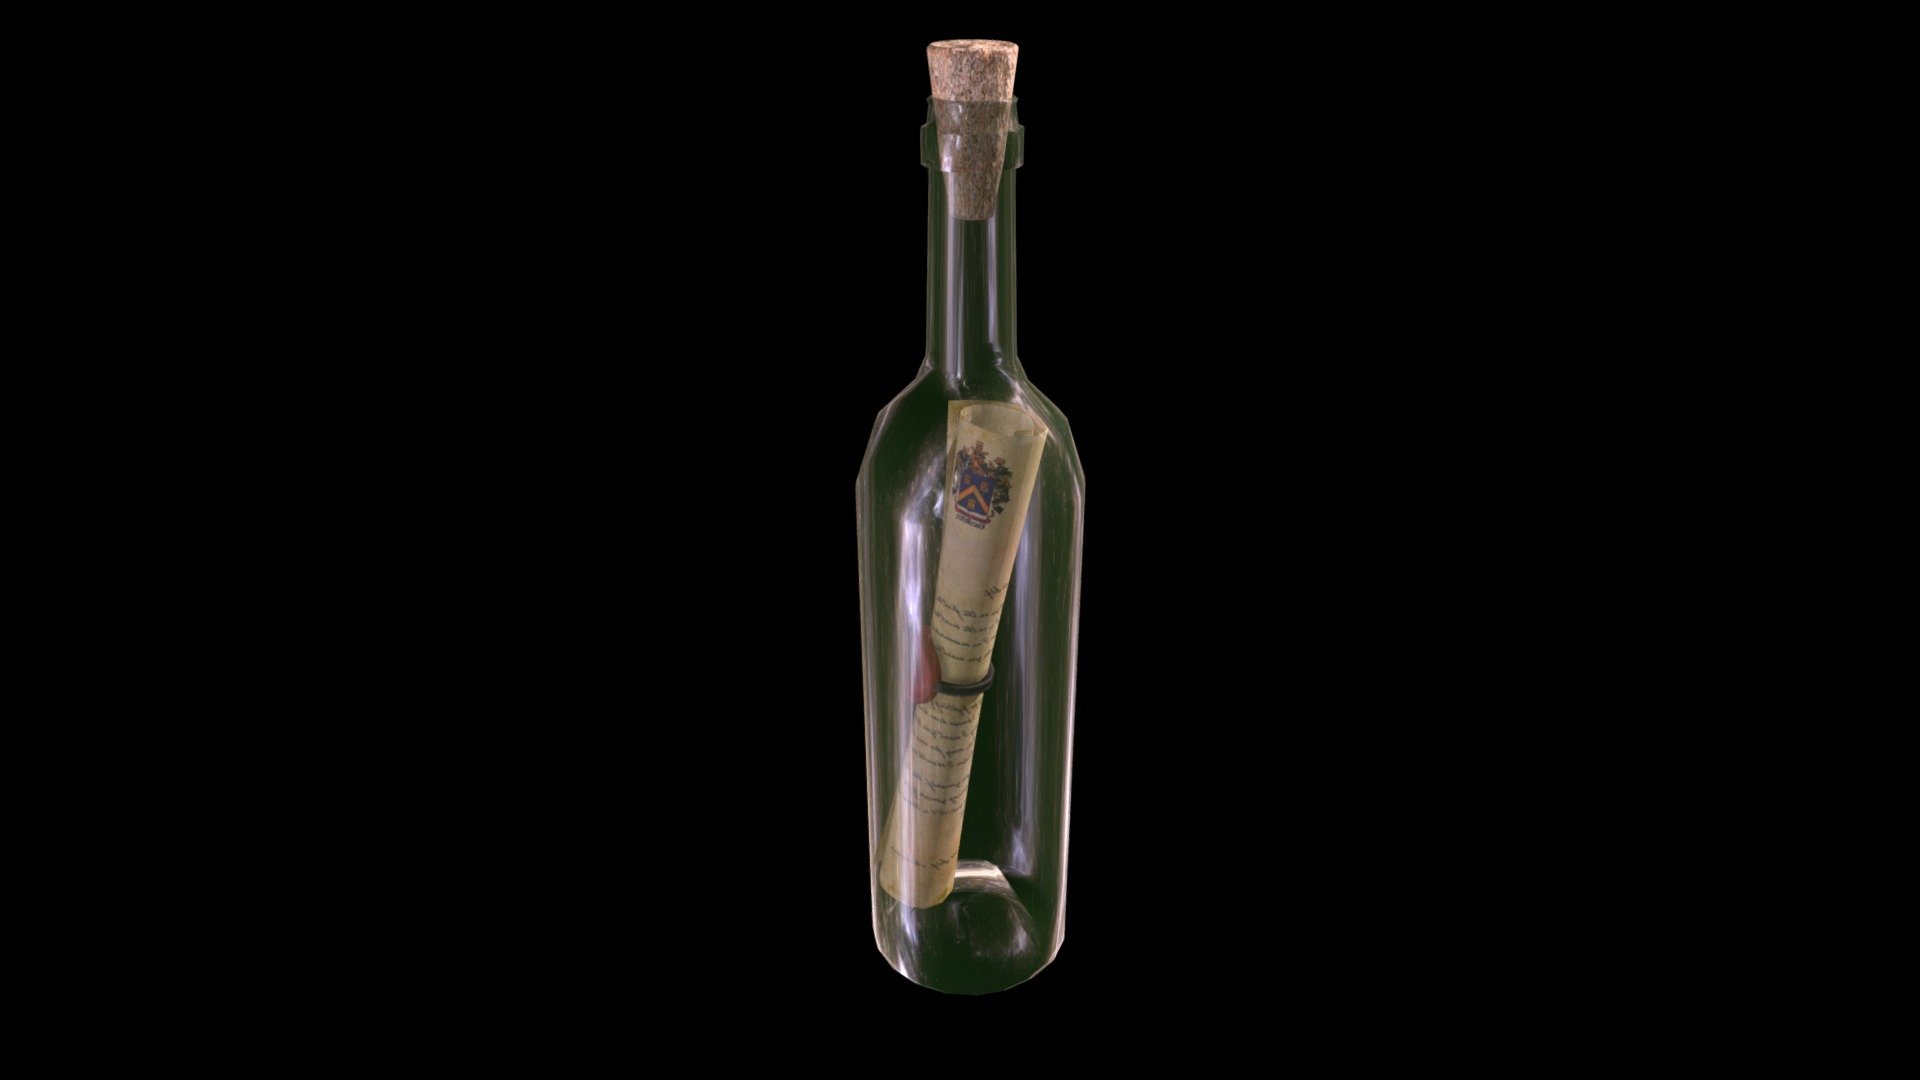 This is a model of Bottle with scroll made in Maya. The scroll was made by FlukierJupiter: https://sketchfab.com/models/7450e494eb654e9b937bb52724220e77
Este é um modelo de garrafa com pergaminho feito no Maya 3d model